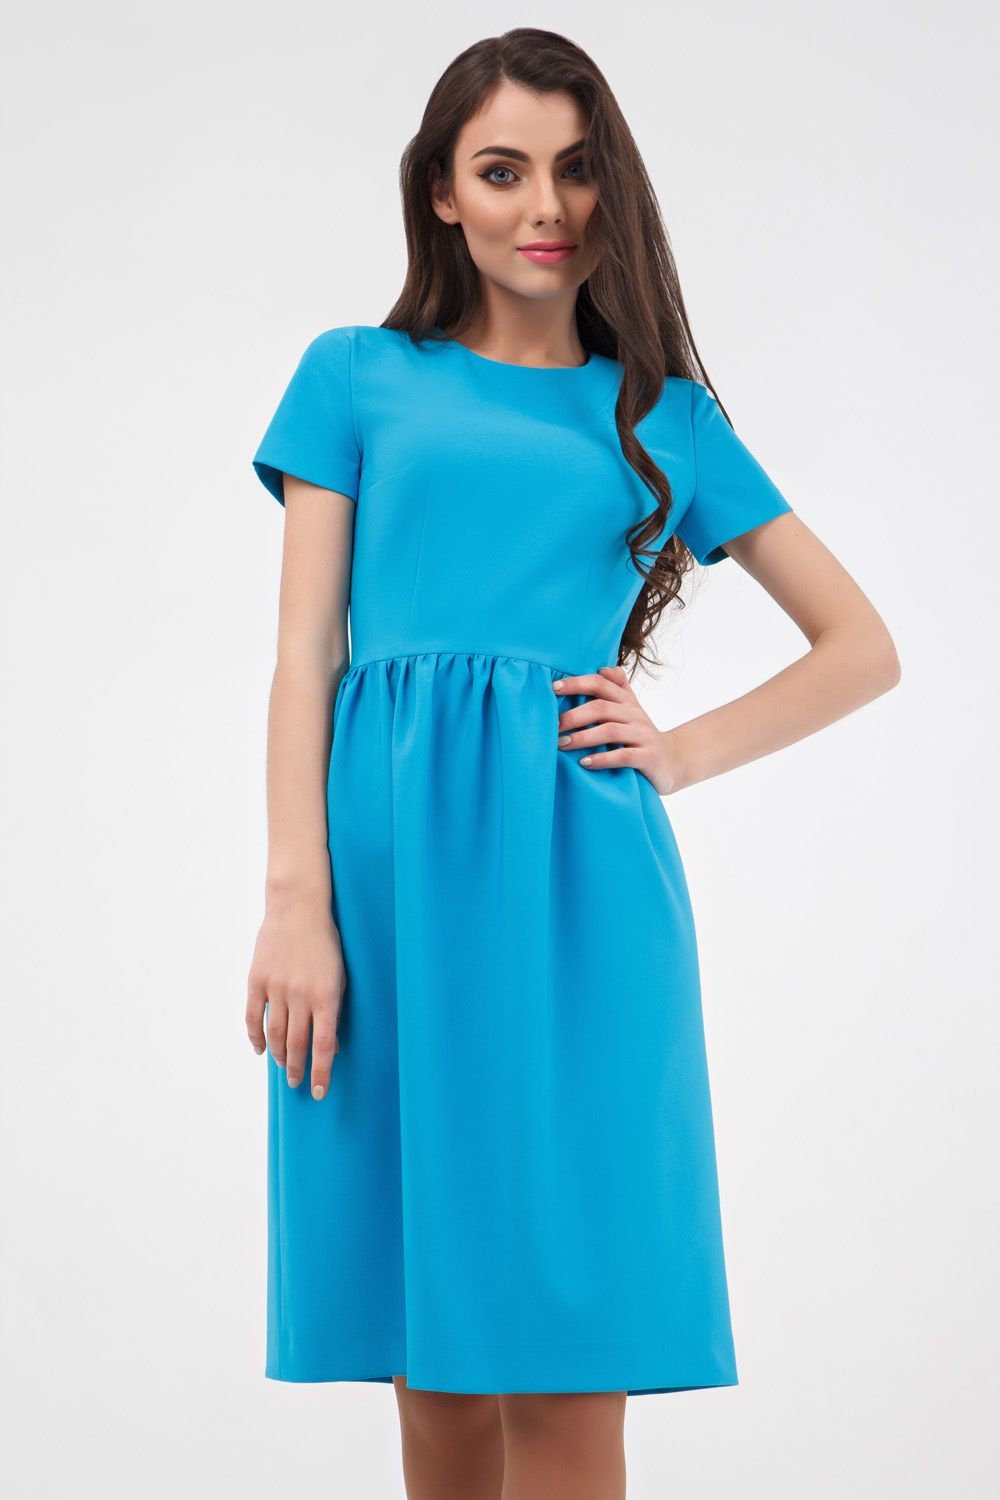 Женственное платье лазурно-голубого оттенка